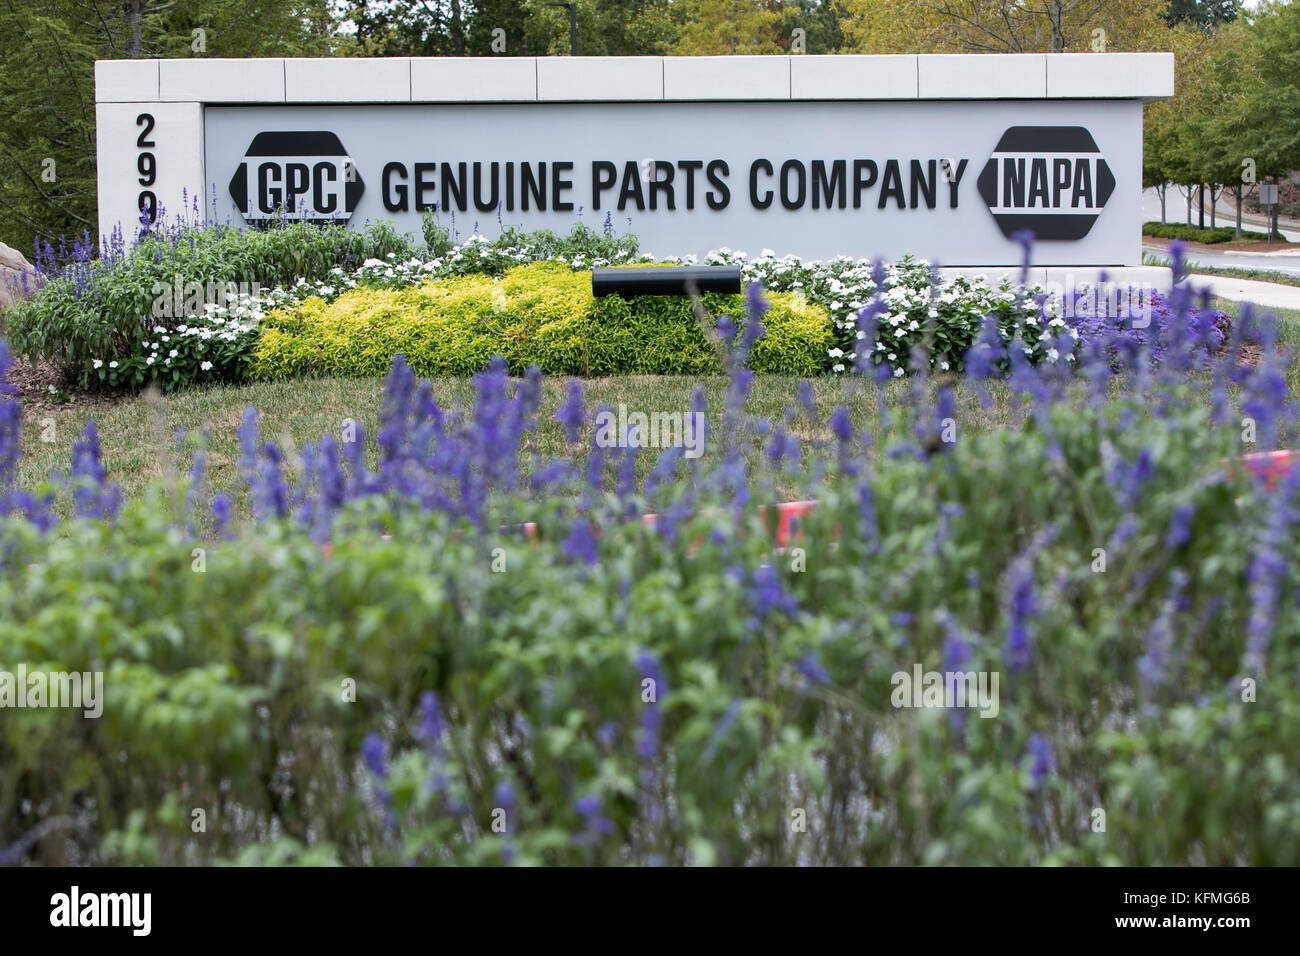 Ein logo Zeichen außerhalb des Hauptquartiers der Original Teile des Unternehmens, der Muttergesellschaft von Napa Auto parts, in Atlanta, Georgia am 7. Oktober 2017. Stockfoto